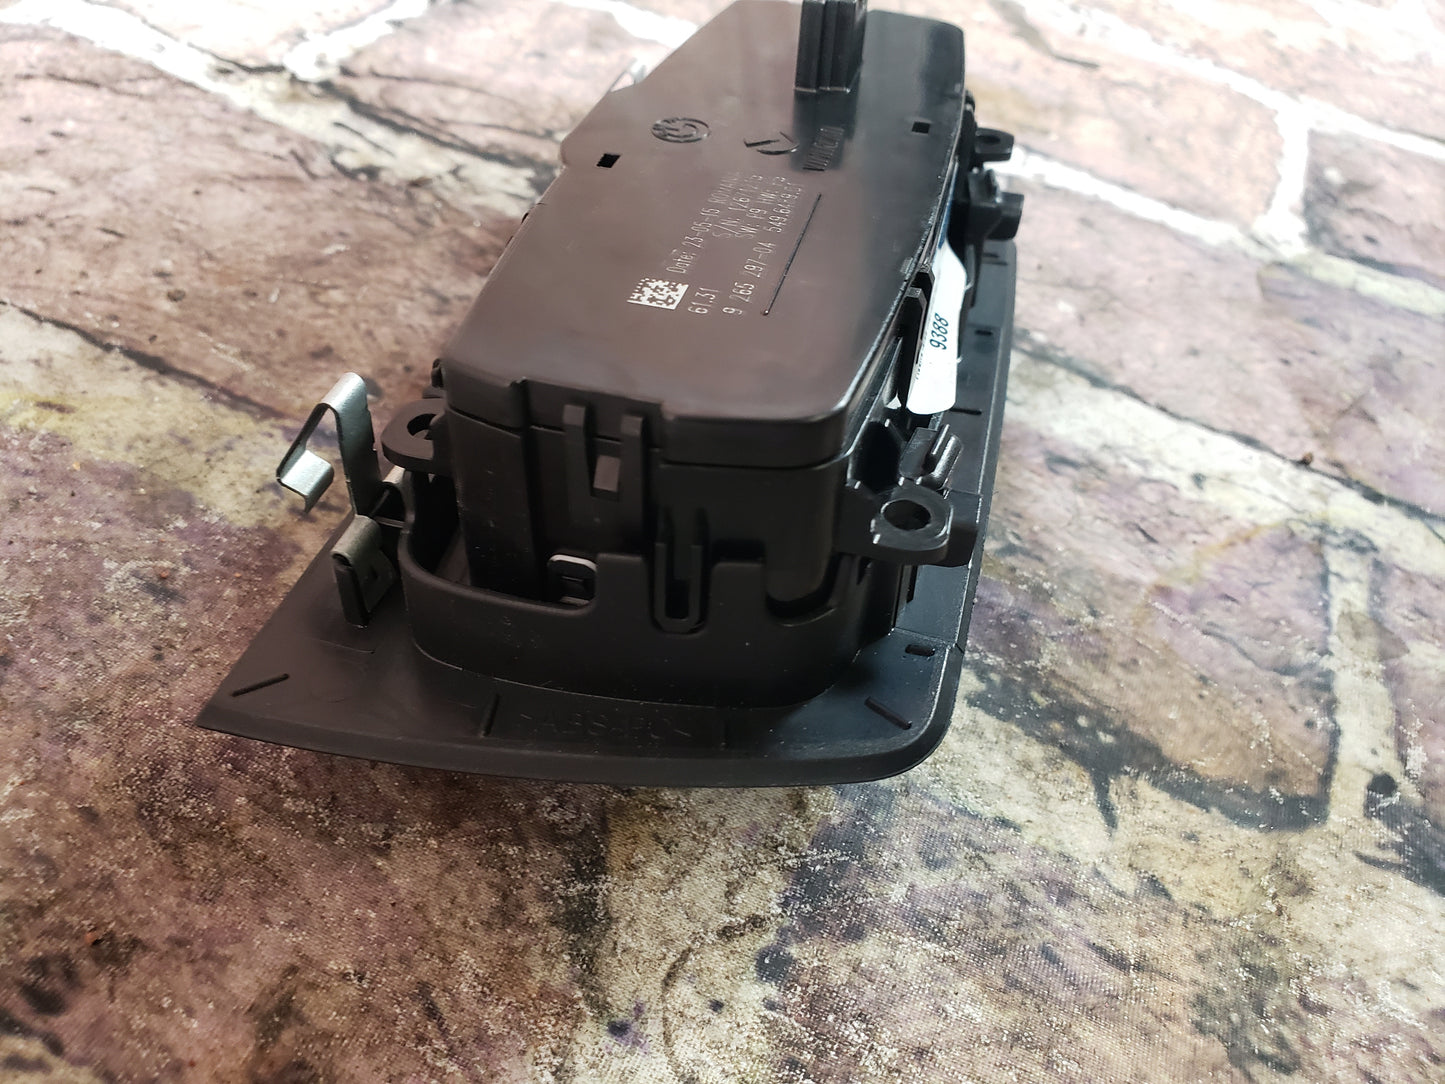 OEM BMW F22 F30 F32 F33 F80 Headlight Switch Control Panel Light Module